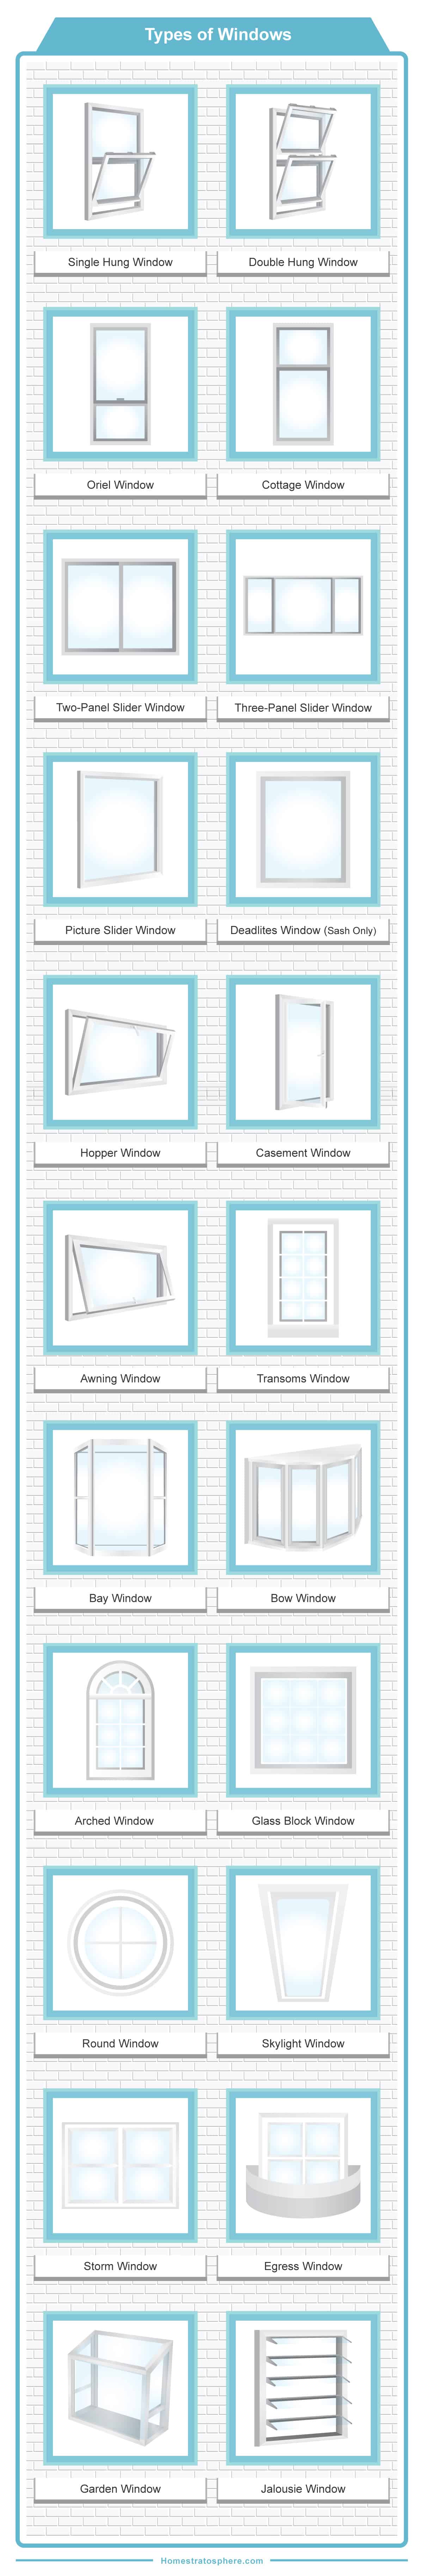 窗口的类型概述图表图显示23种不同类型的窗口